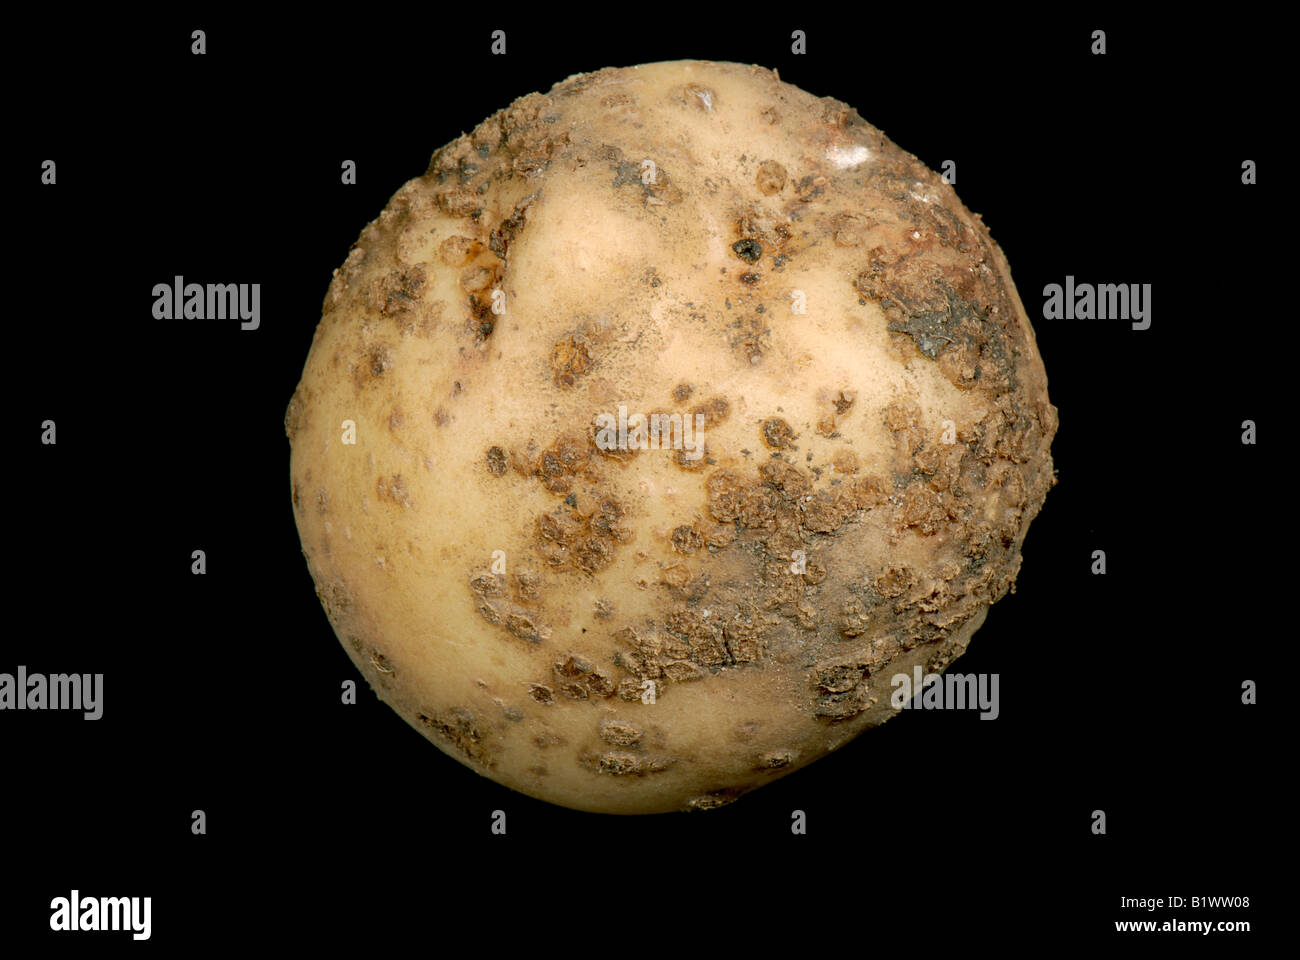 Powdery scab Spogospora subterranea infection on a small potato tuber Stock Photo